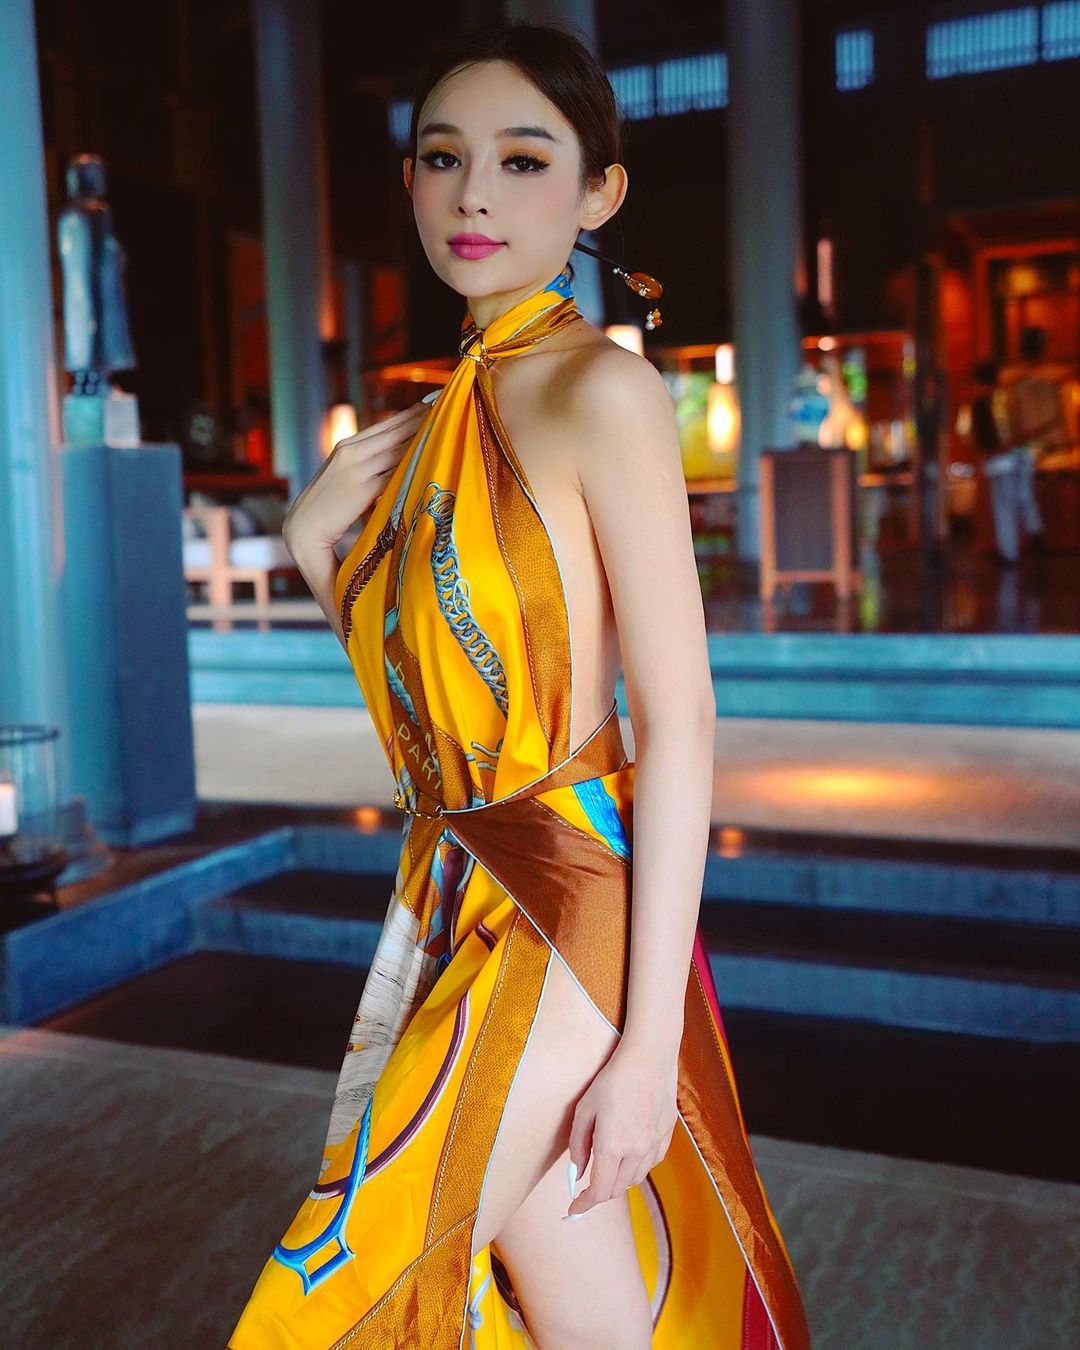  “Hot girl ở lâu đài 80 tỷ giữa Sài thành” dùng nơ thay nội y khoe body đẹp mướt mắt